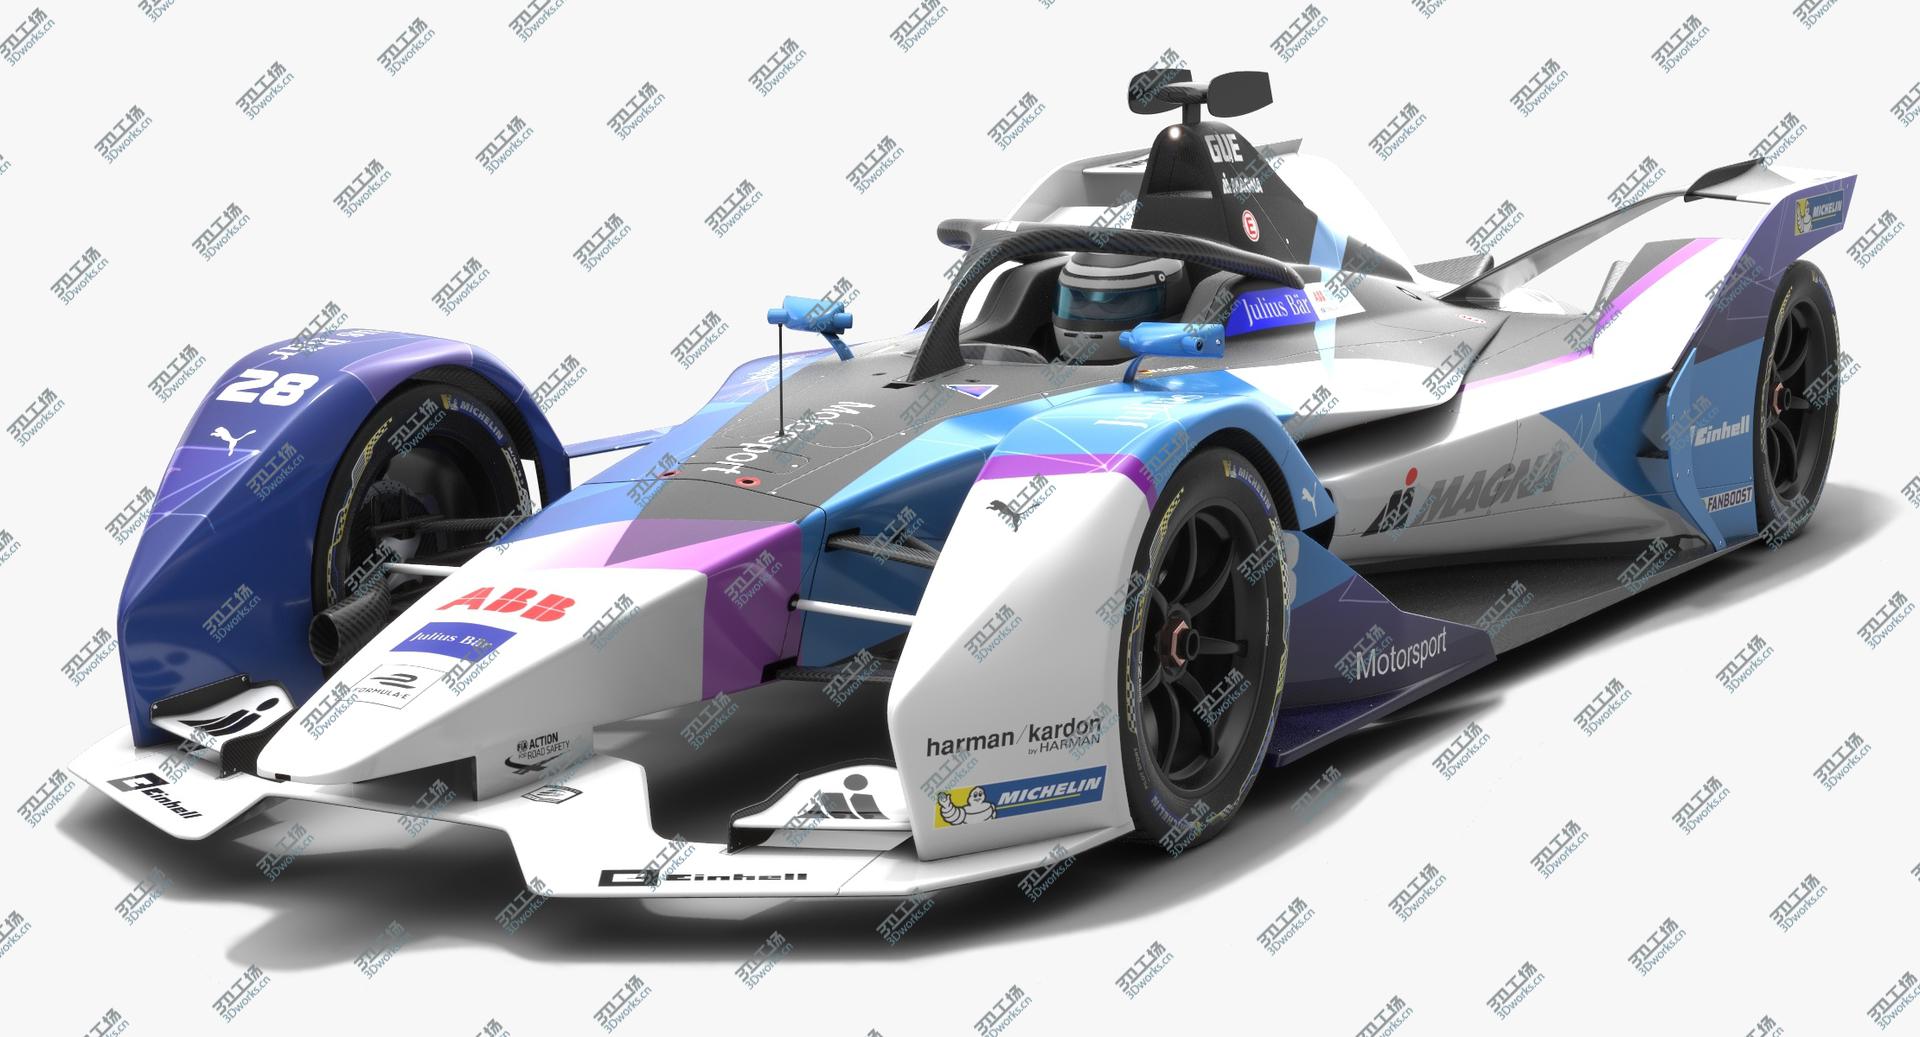 images/goods_img/2021040232/Andretti Motorsport Formula E Season 2019 2020 3D/3.jpg